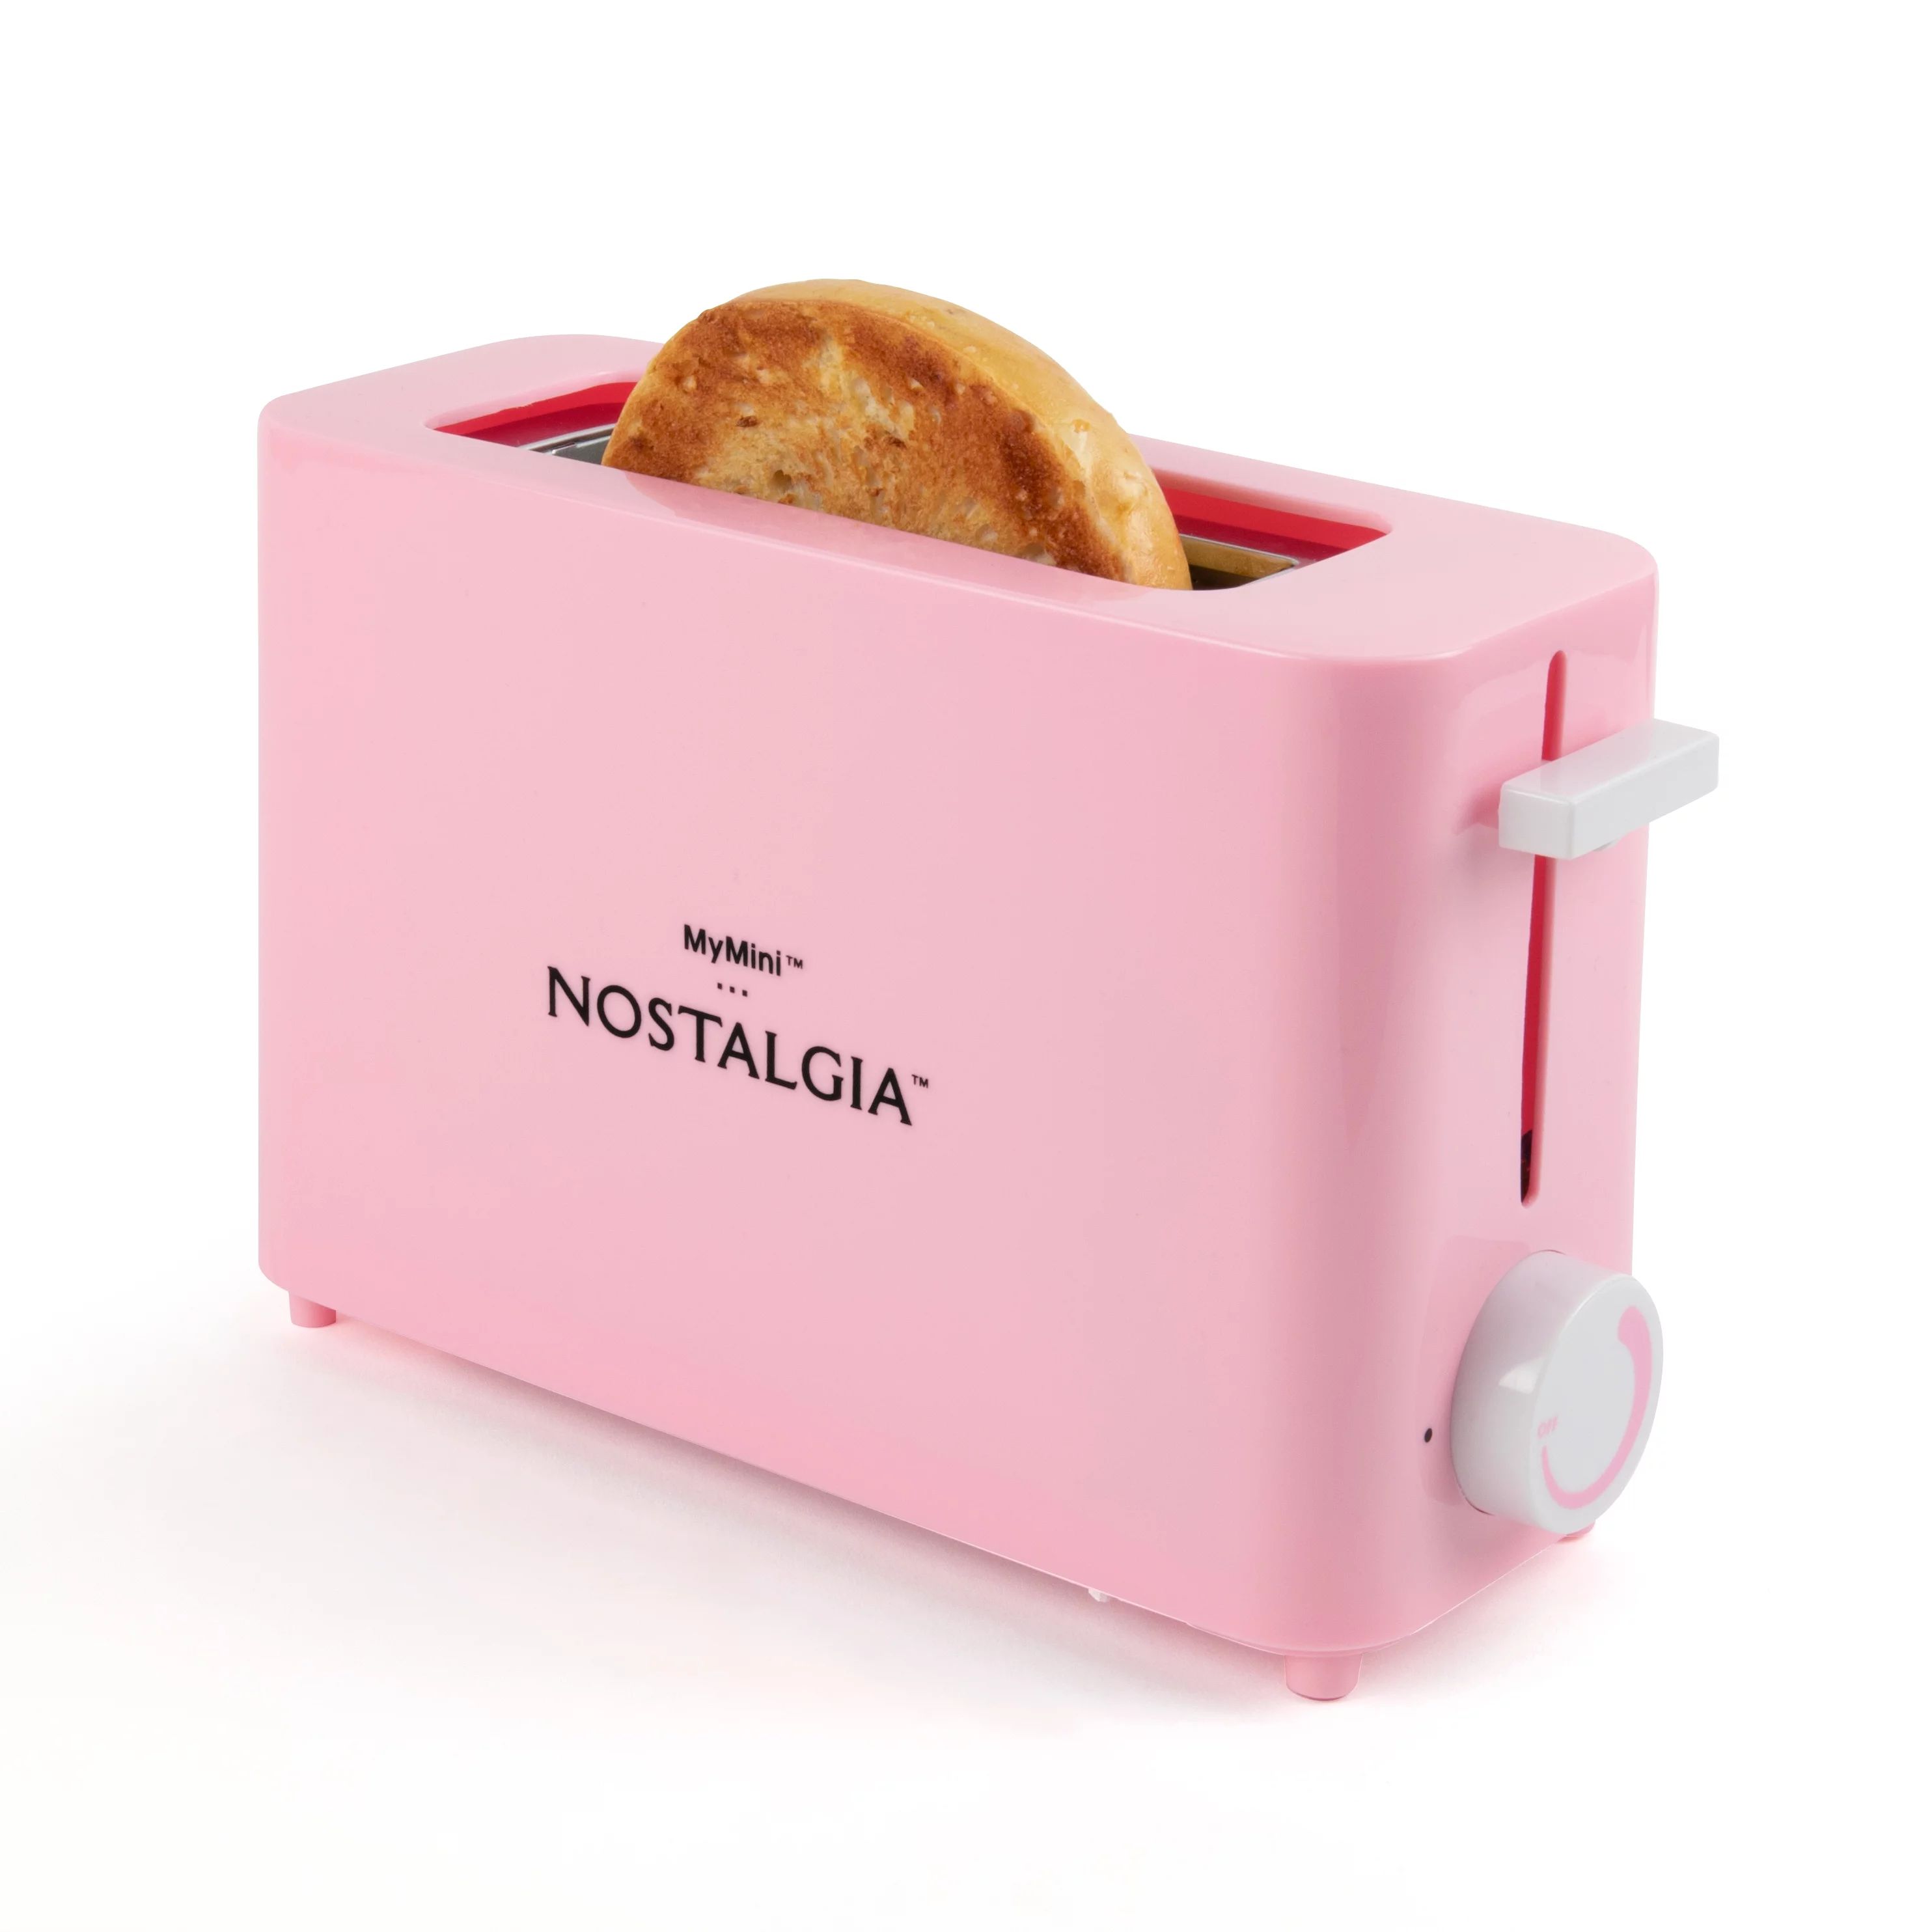 Nostalgia Single Slice Toaster, Pink | Walmart (US)